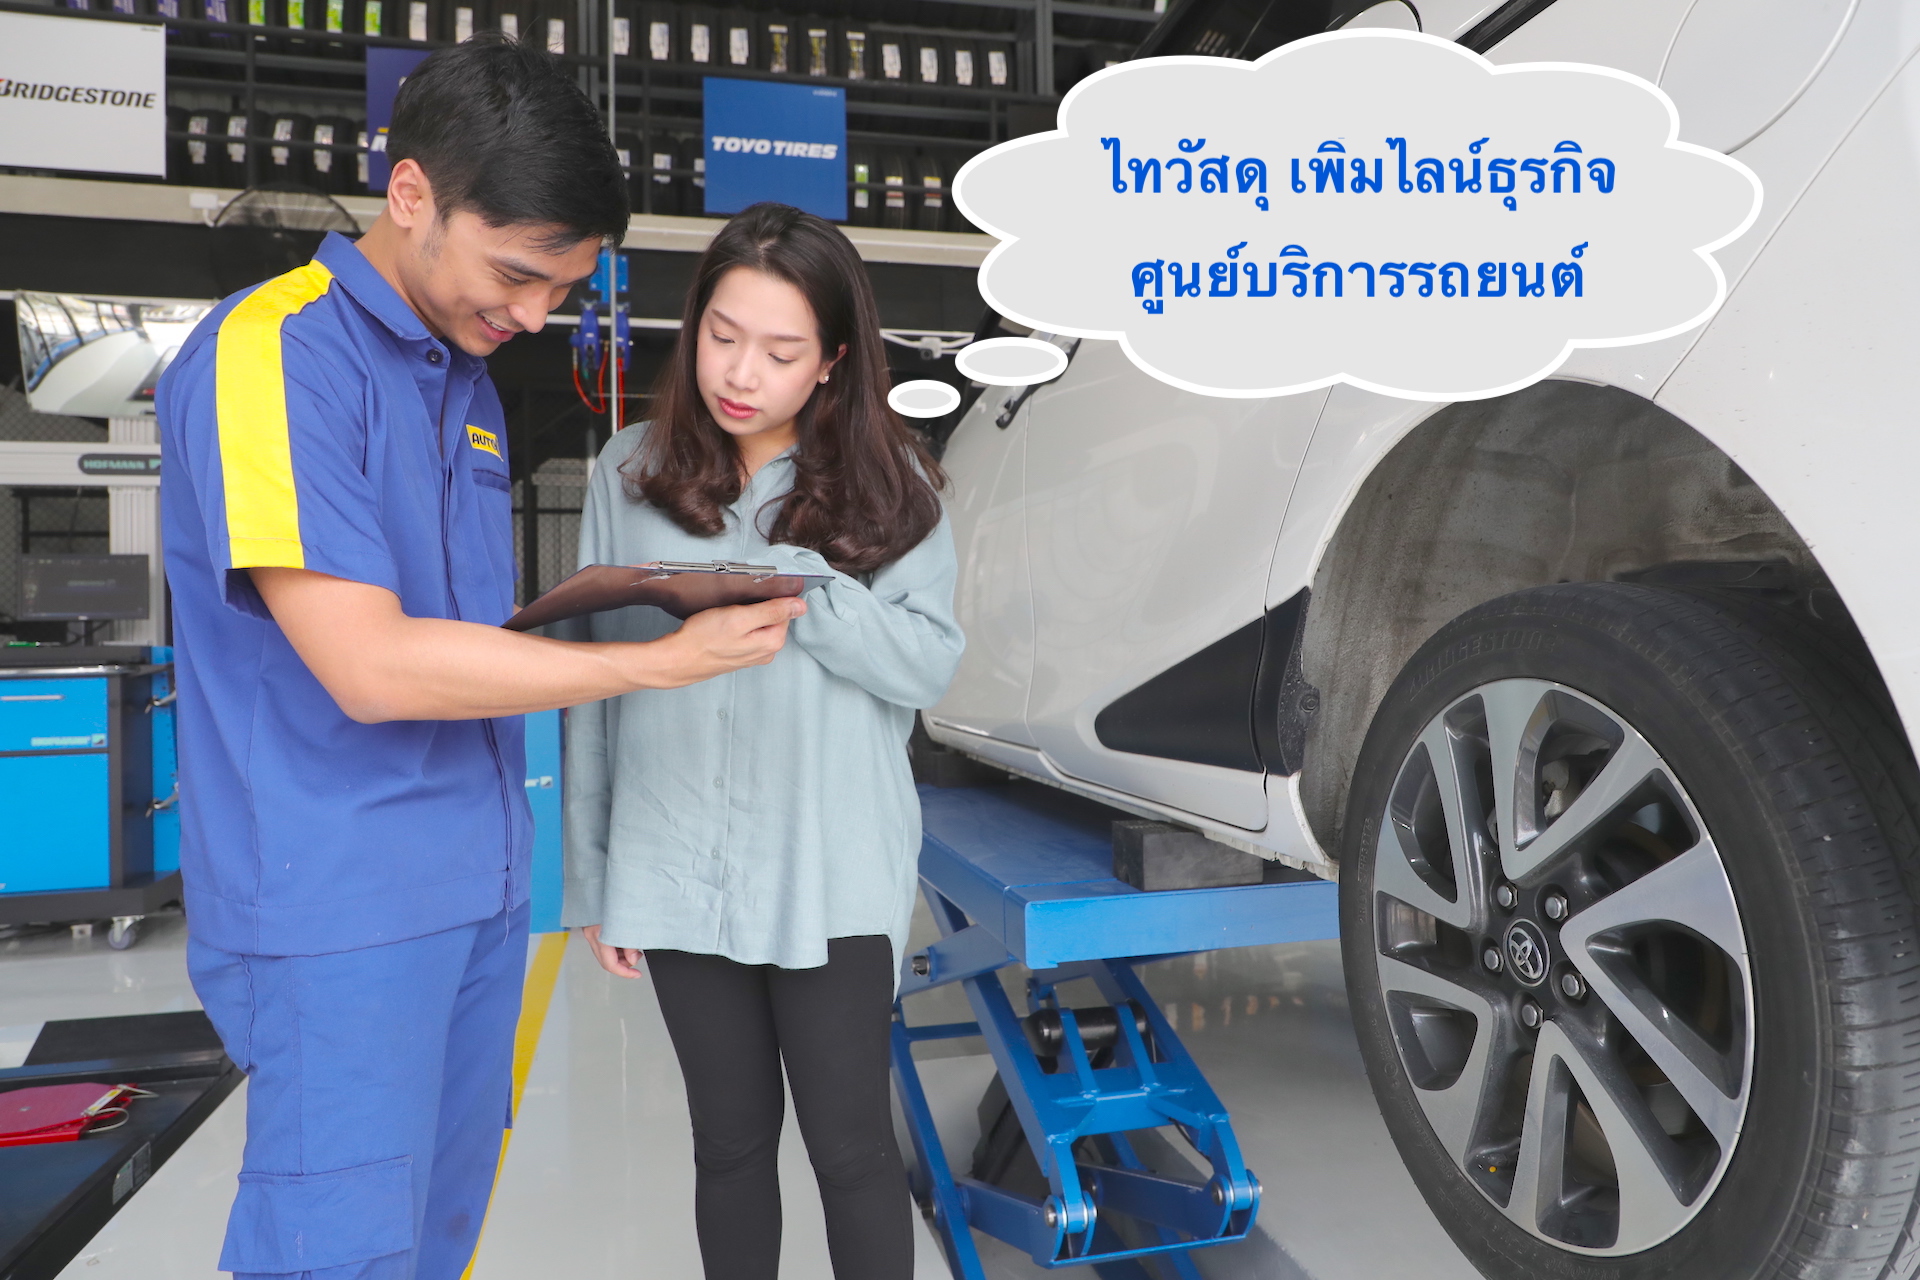 ไทวัสดุ บุกธุรกิจ ฟาสต์ฟิต (FAST FIT) เตรียมเปิดตัว ออโต้วัน (AUTO 1) / Thai Watsadu enters automotive fast-fit business with official launching of Auto 1